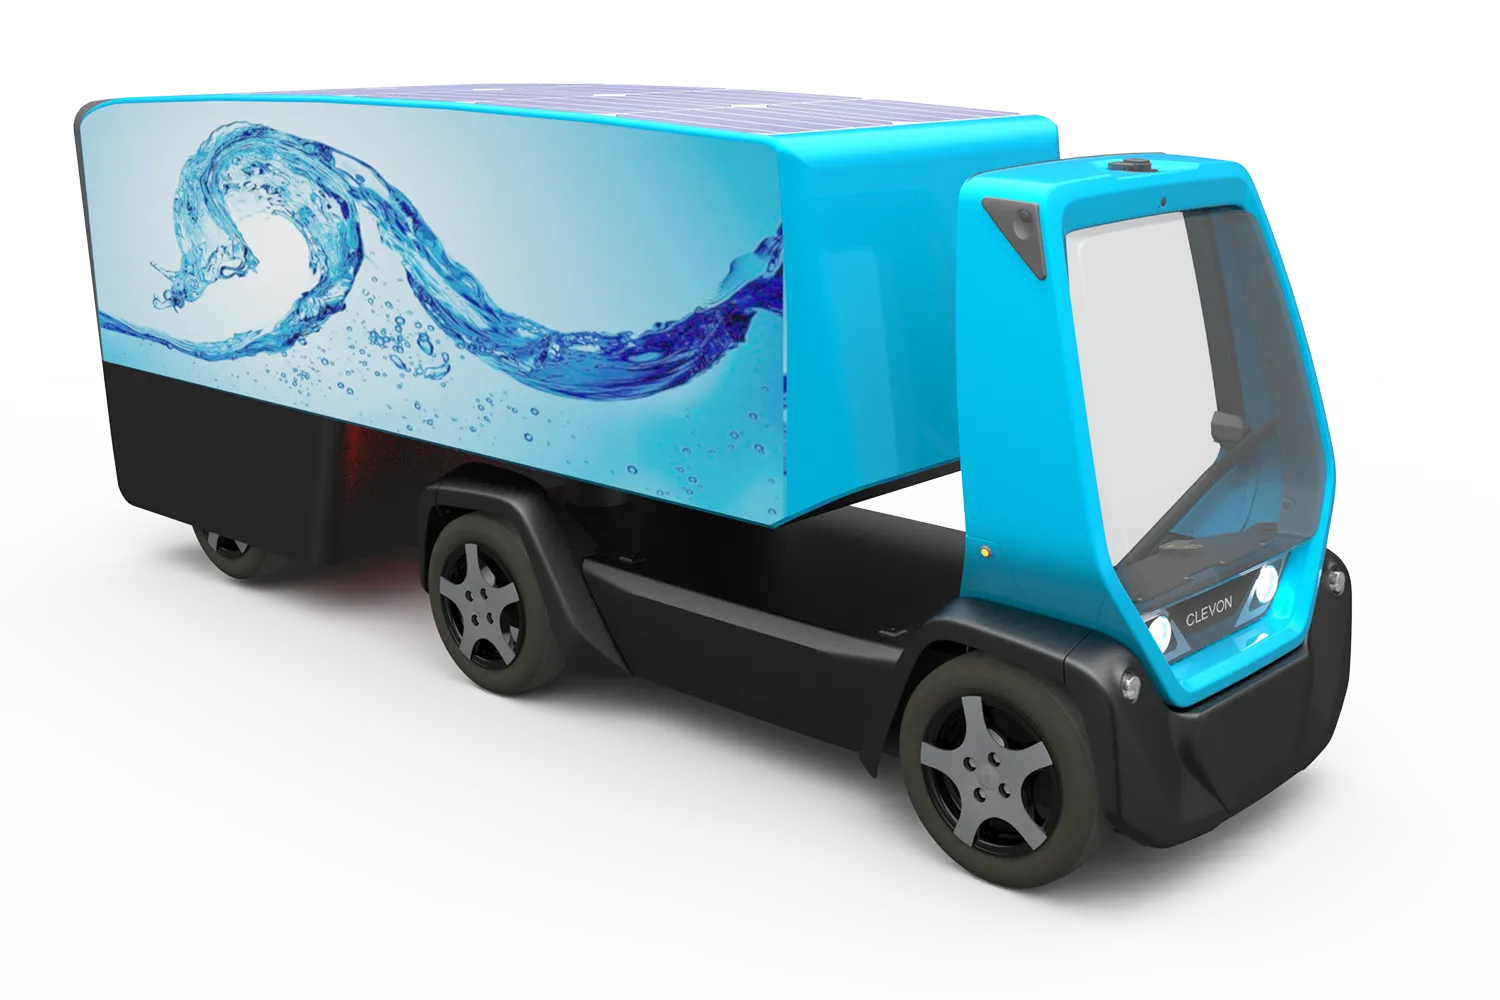 CLEVON 1 autonomous platform vehicle with trailer